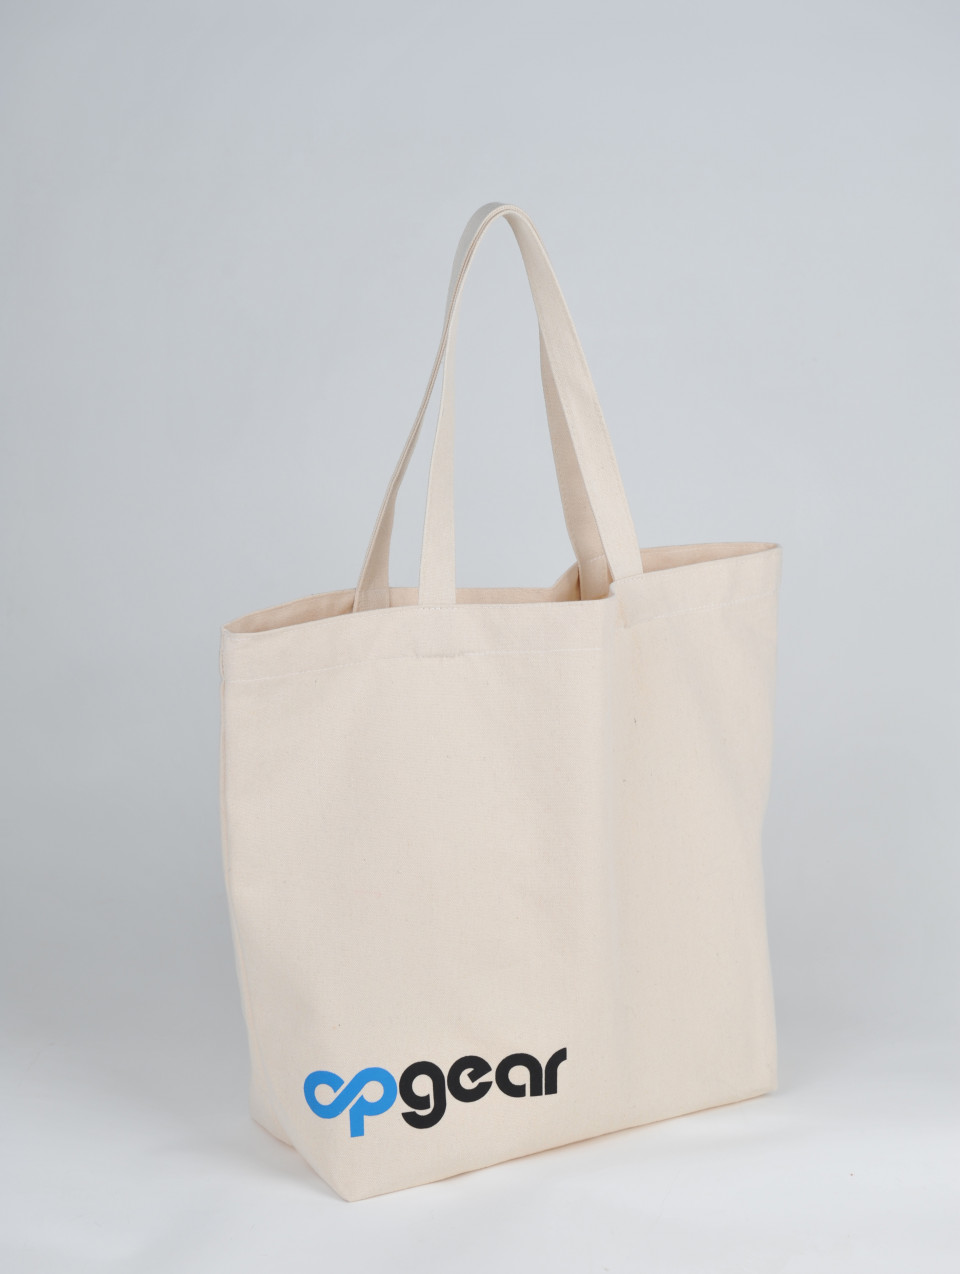 OPGear Shopping Bag